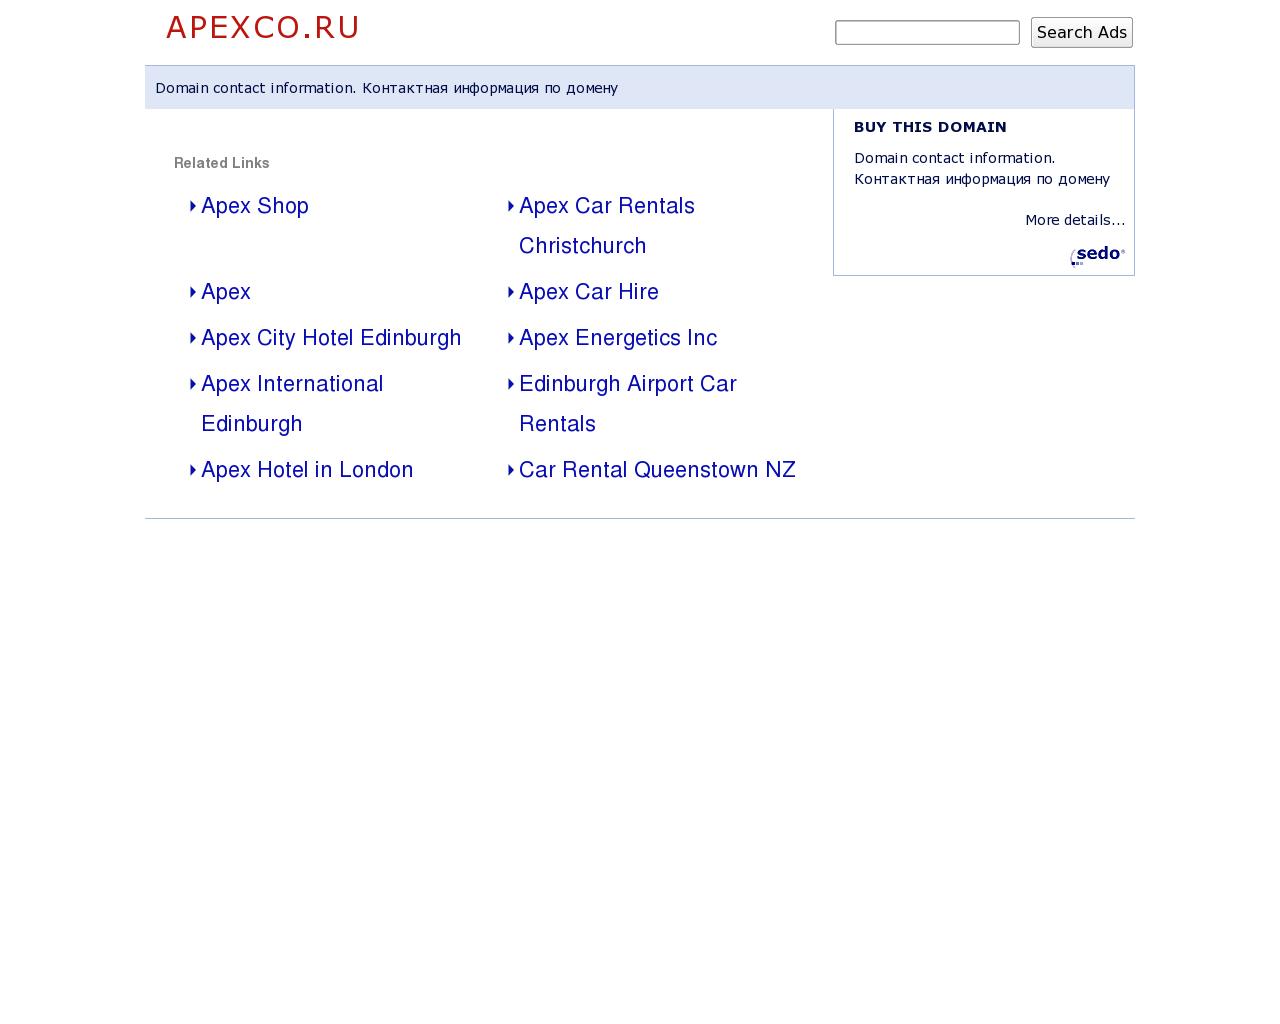 Изображение сайта apexco.ru в разрешении 1280x1024